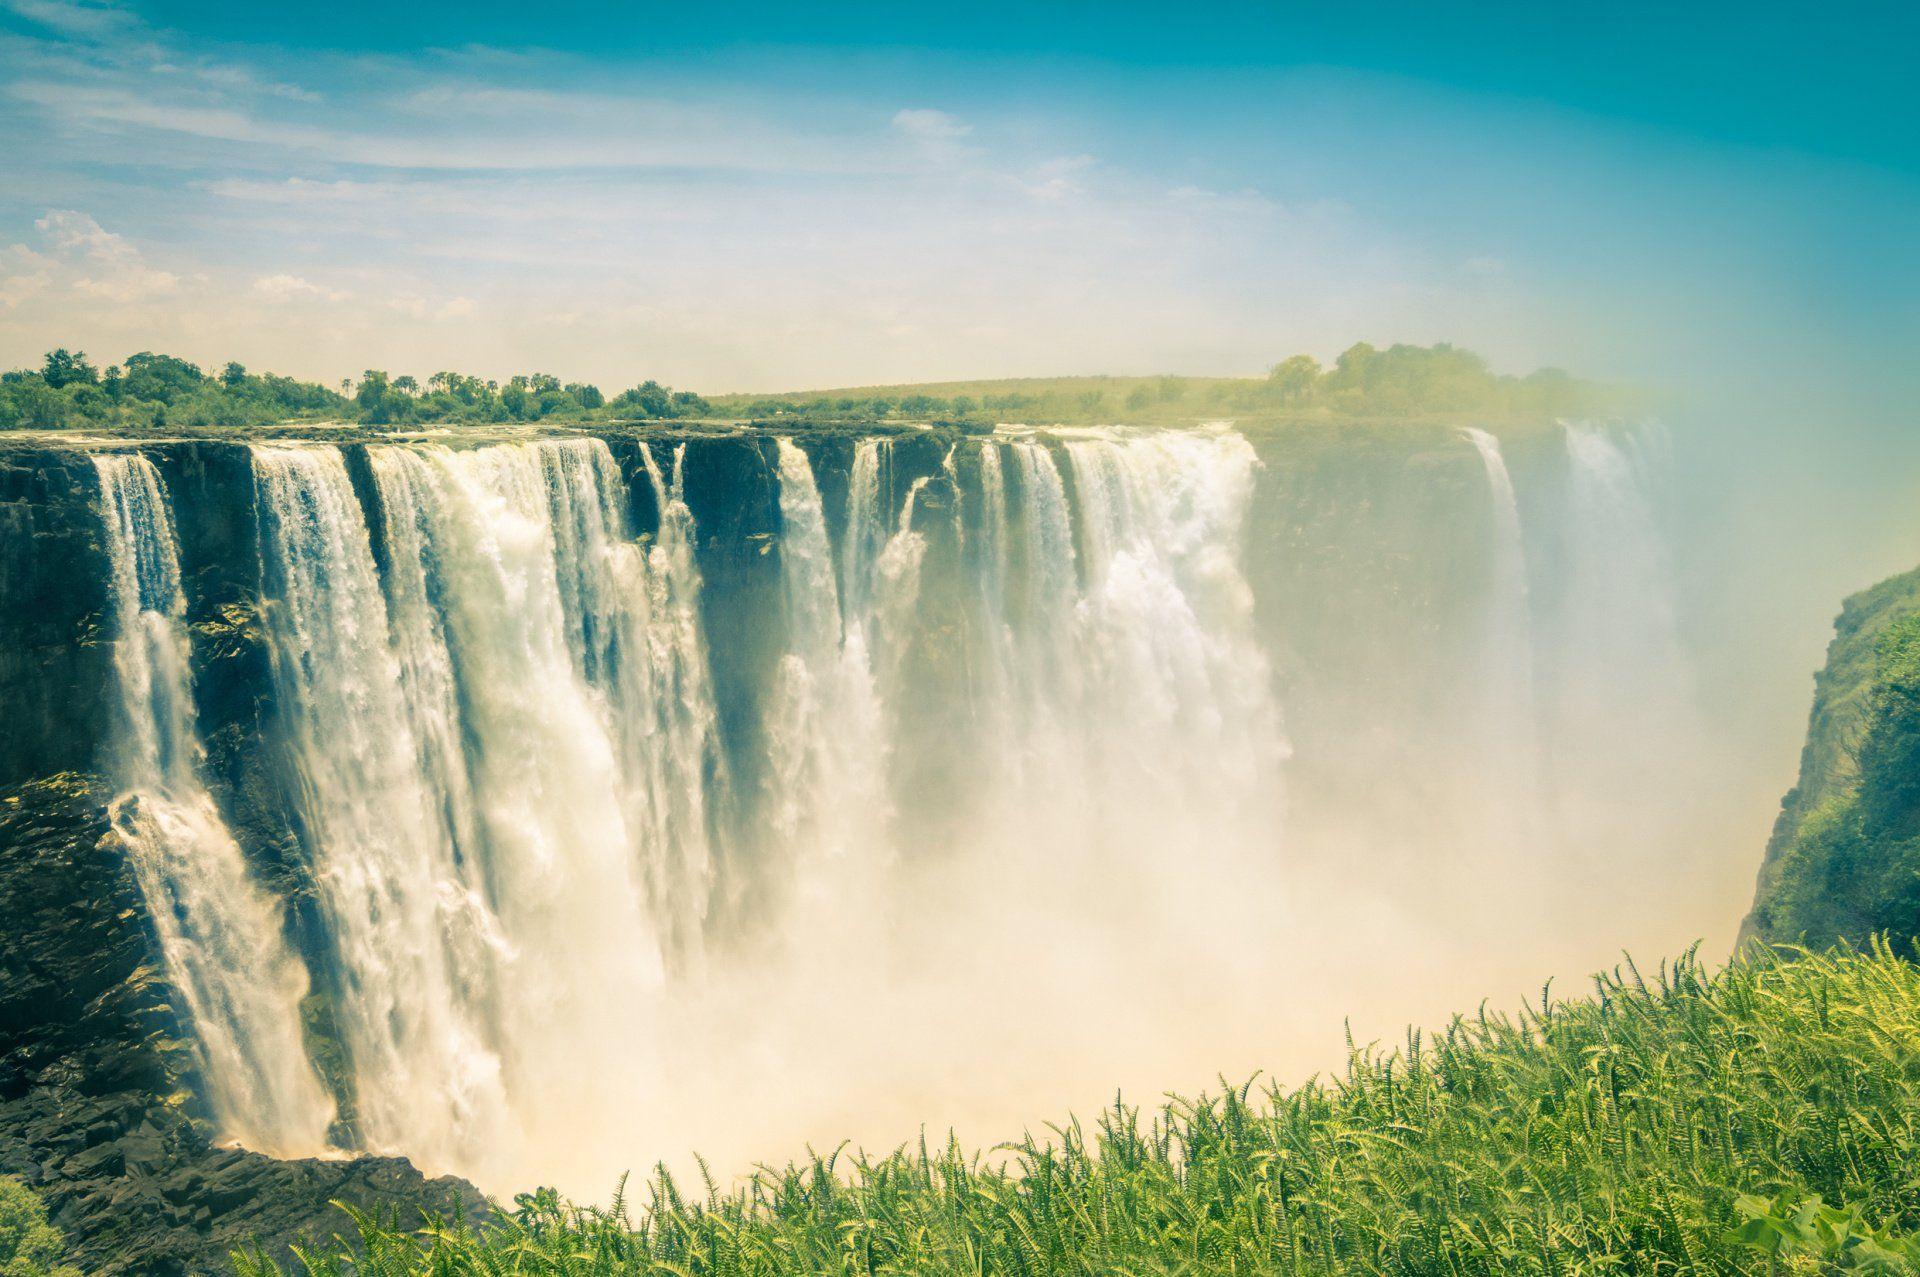 Victoria Falls visible from both Zambia and Zimbabwe